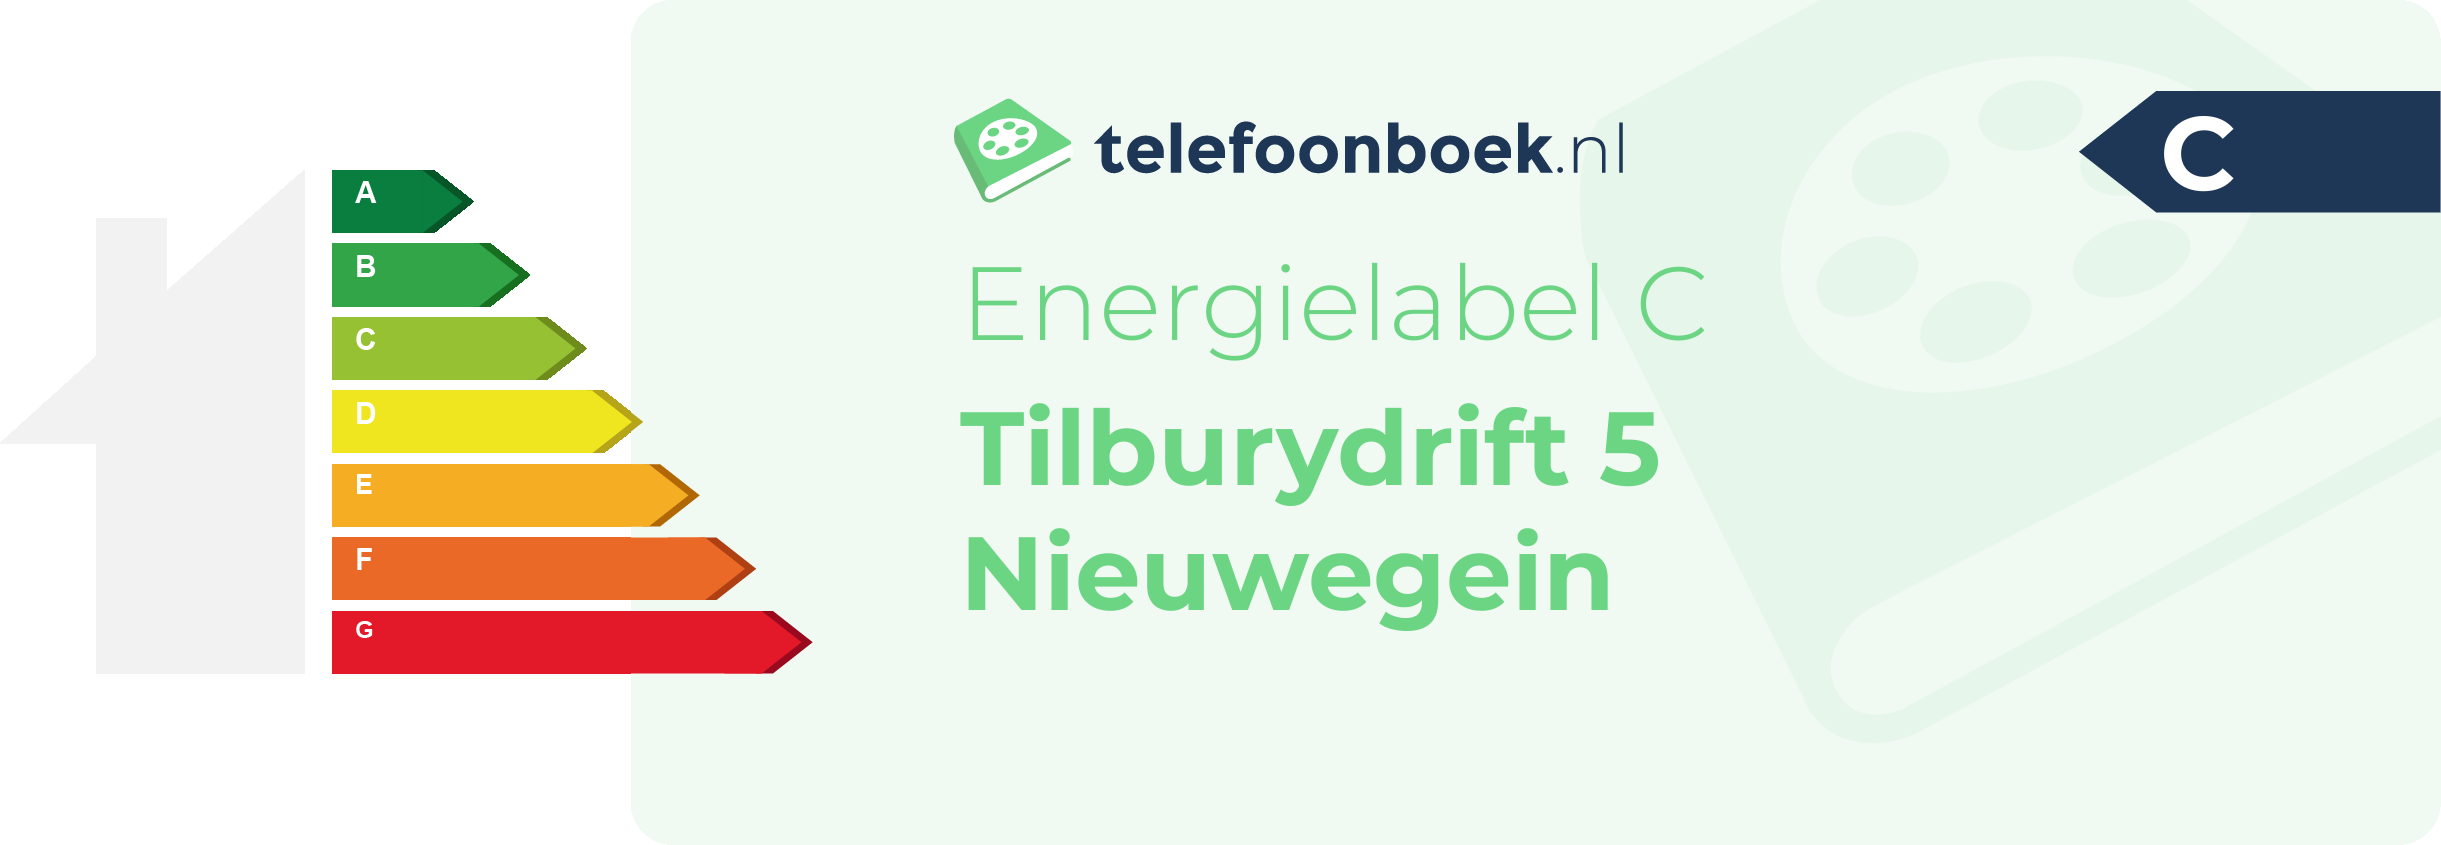 Energielabel Tilburydrift 5 Nieuwegein